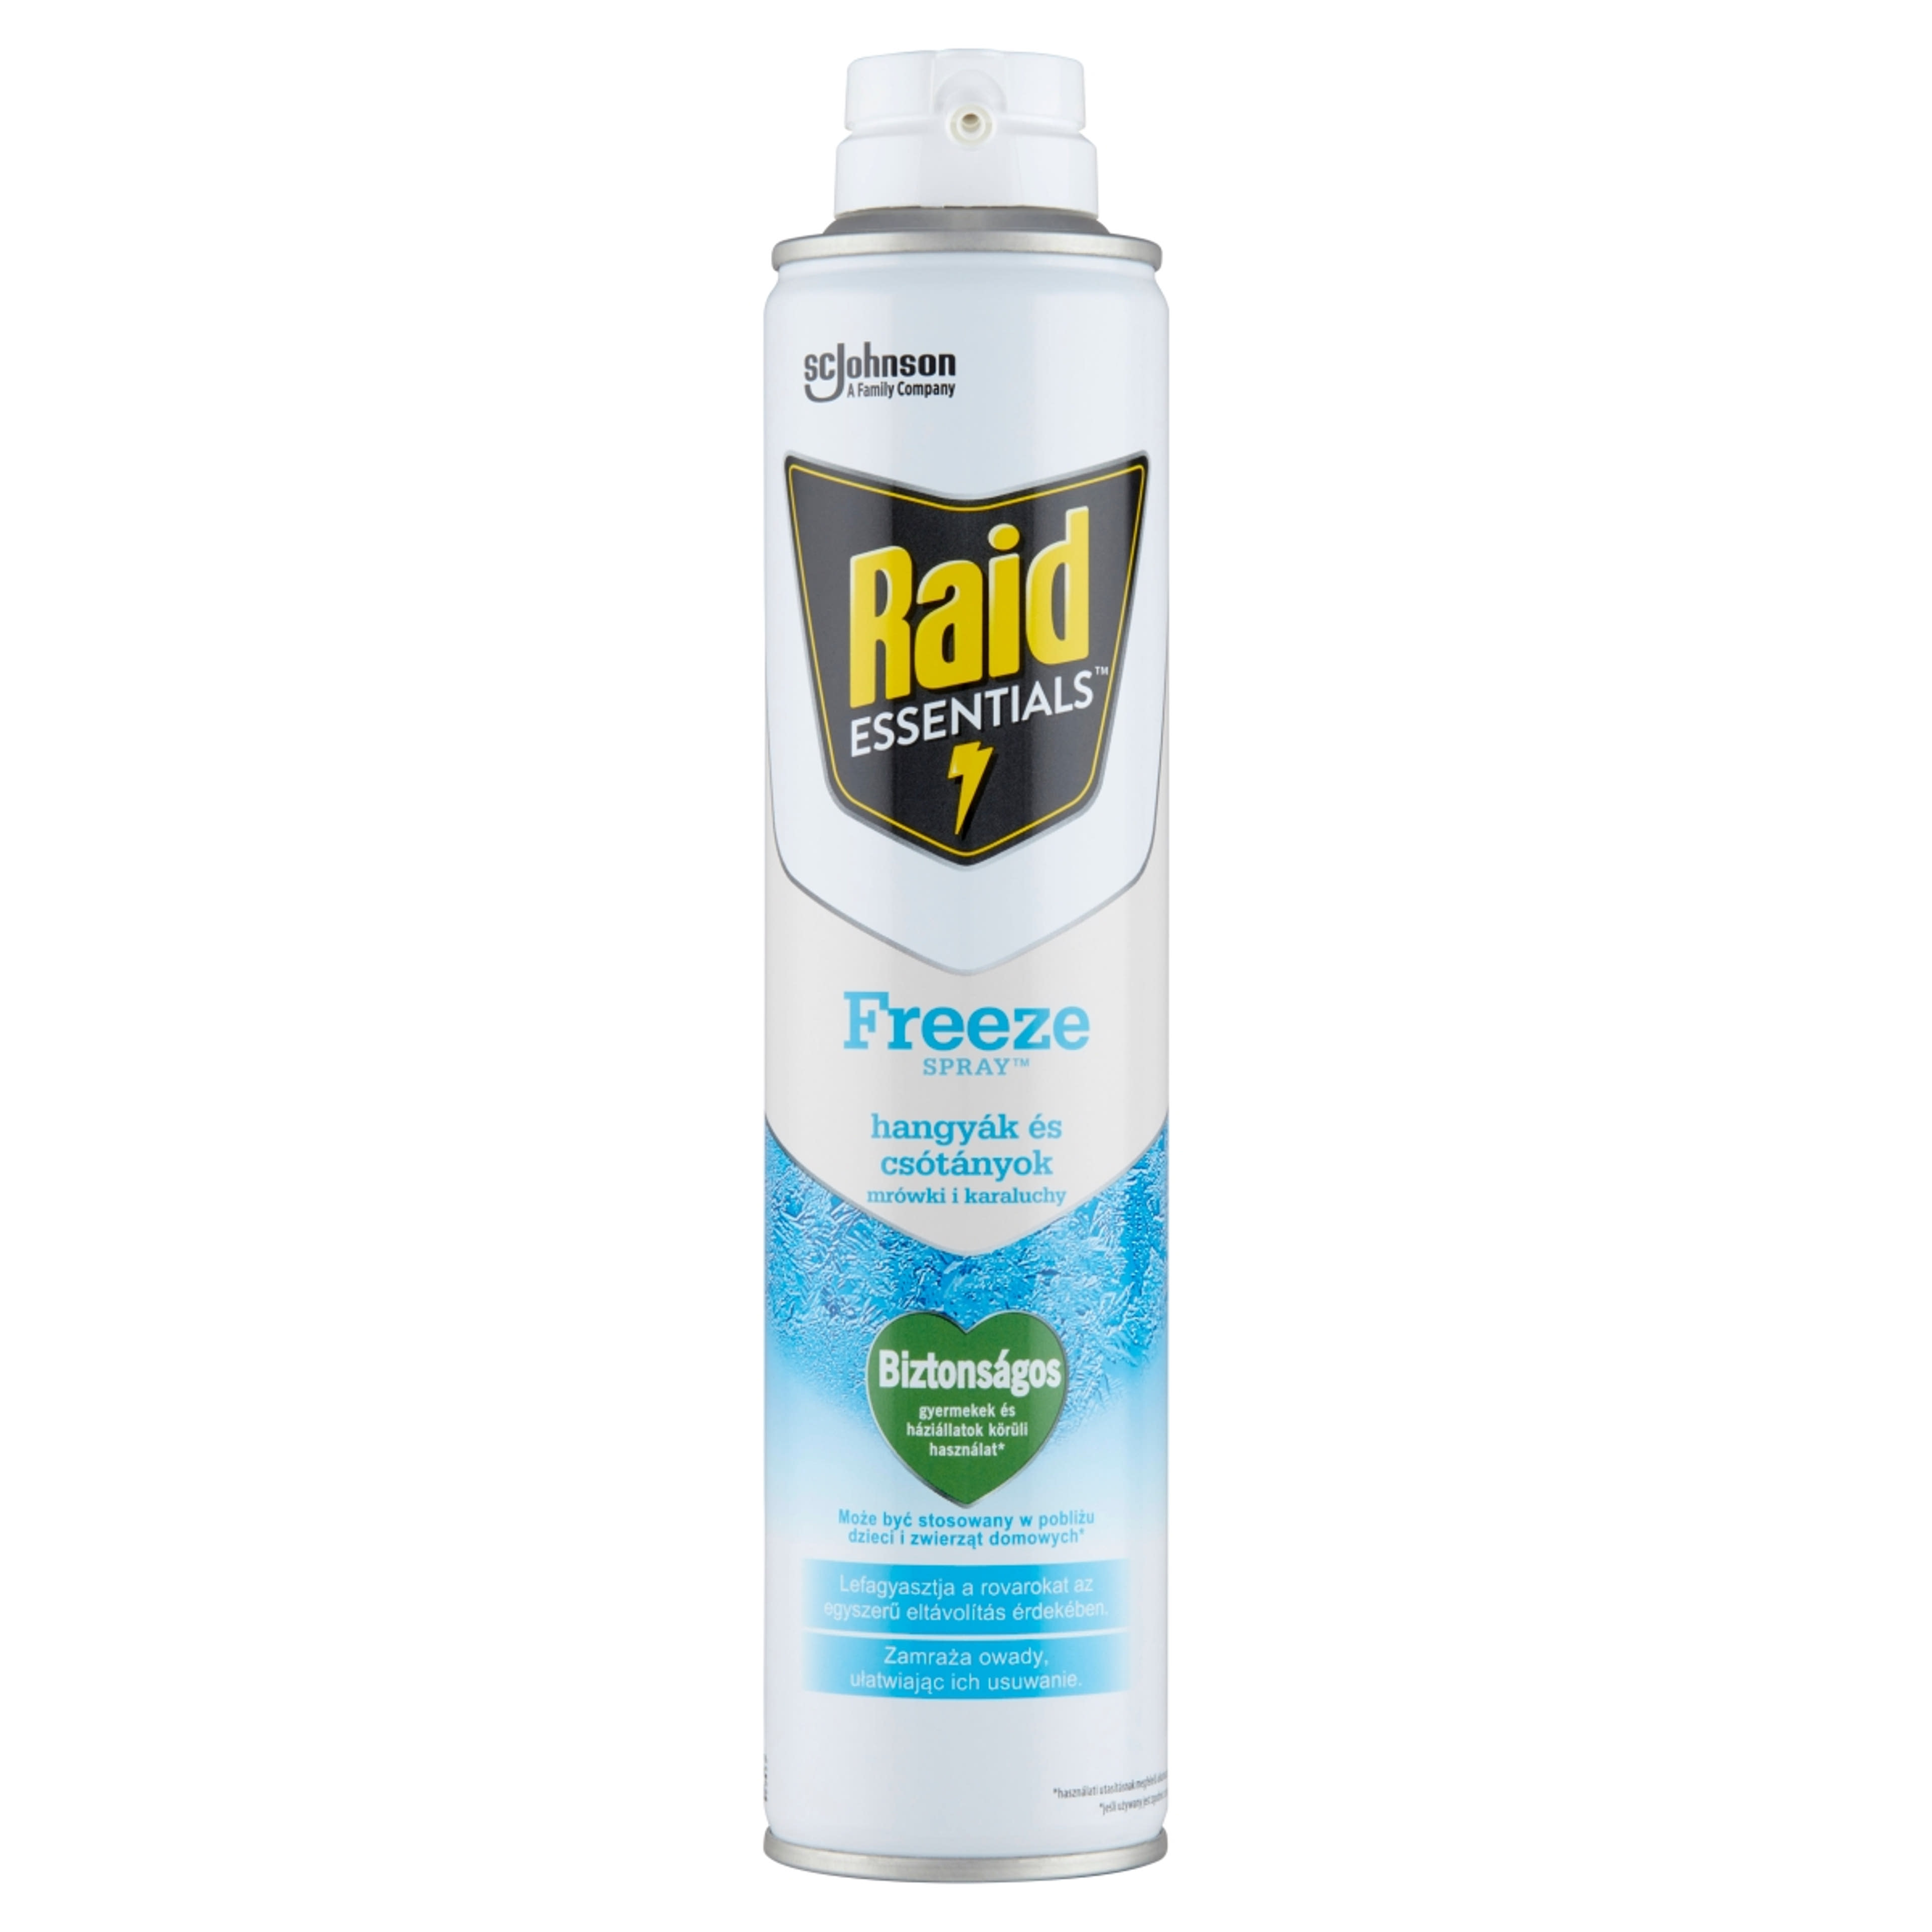 Raid Essentials Freeze rovarfagyasztó spray - 350 ml-1